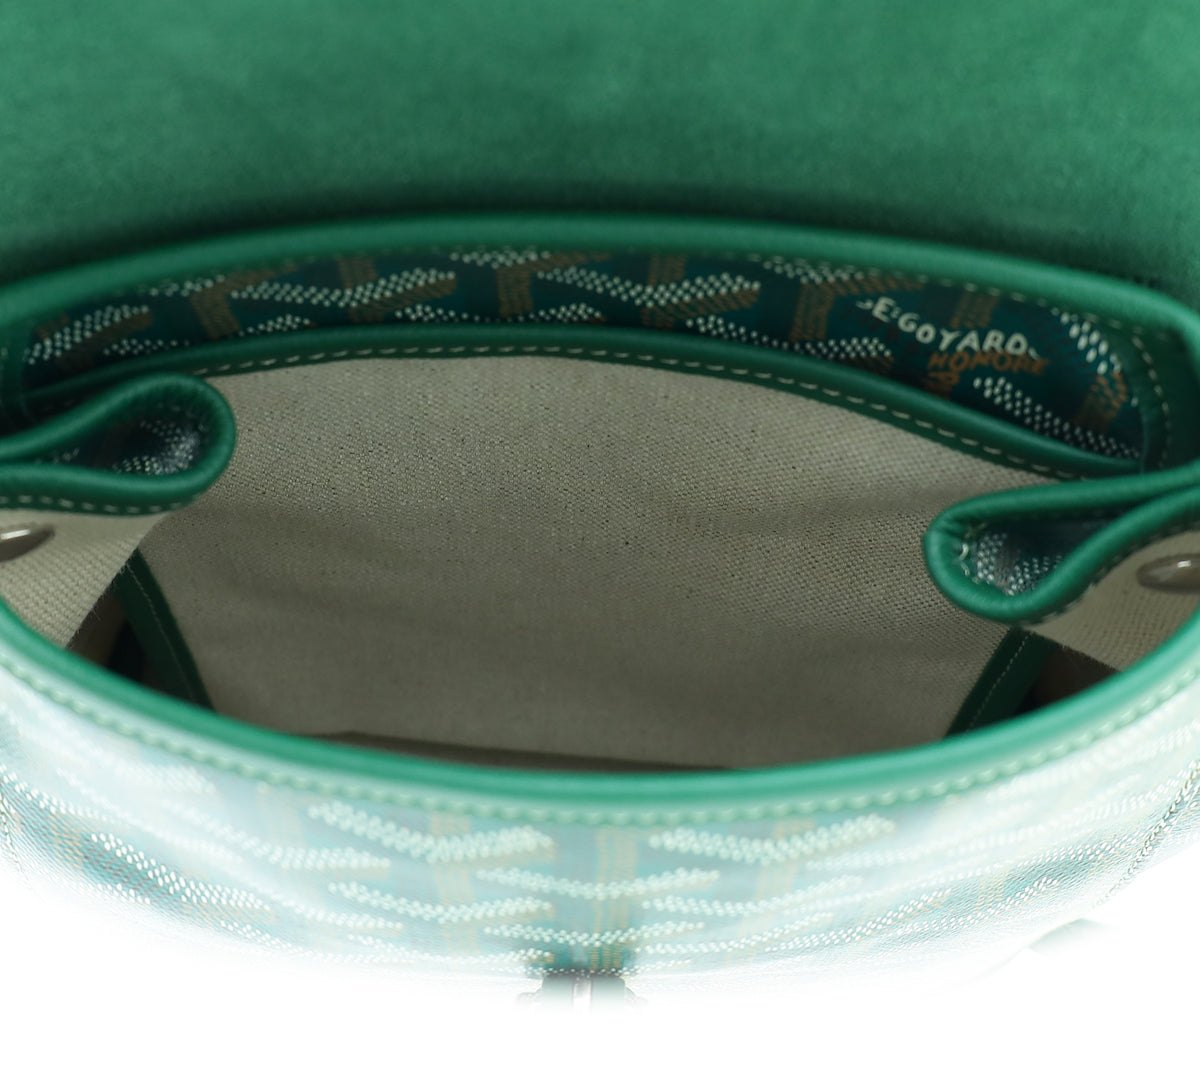 Goyard Green Goyardine Sac Alpin Mini Backpack Bag